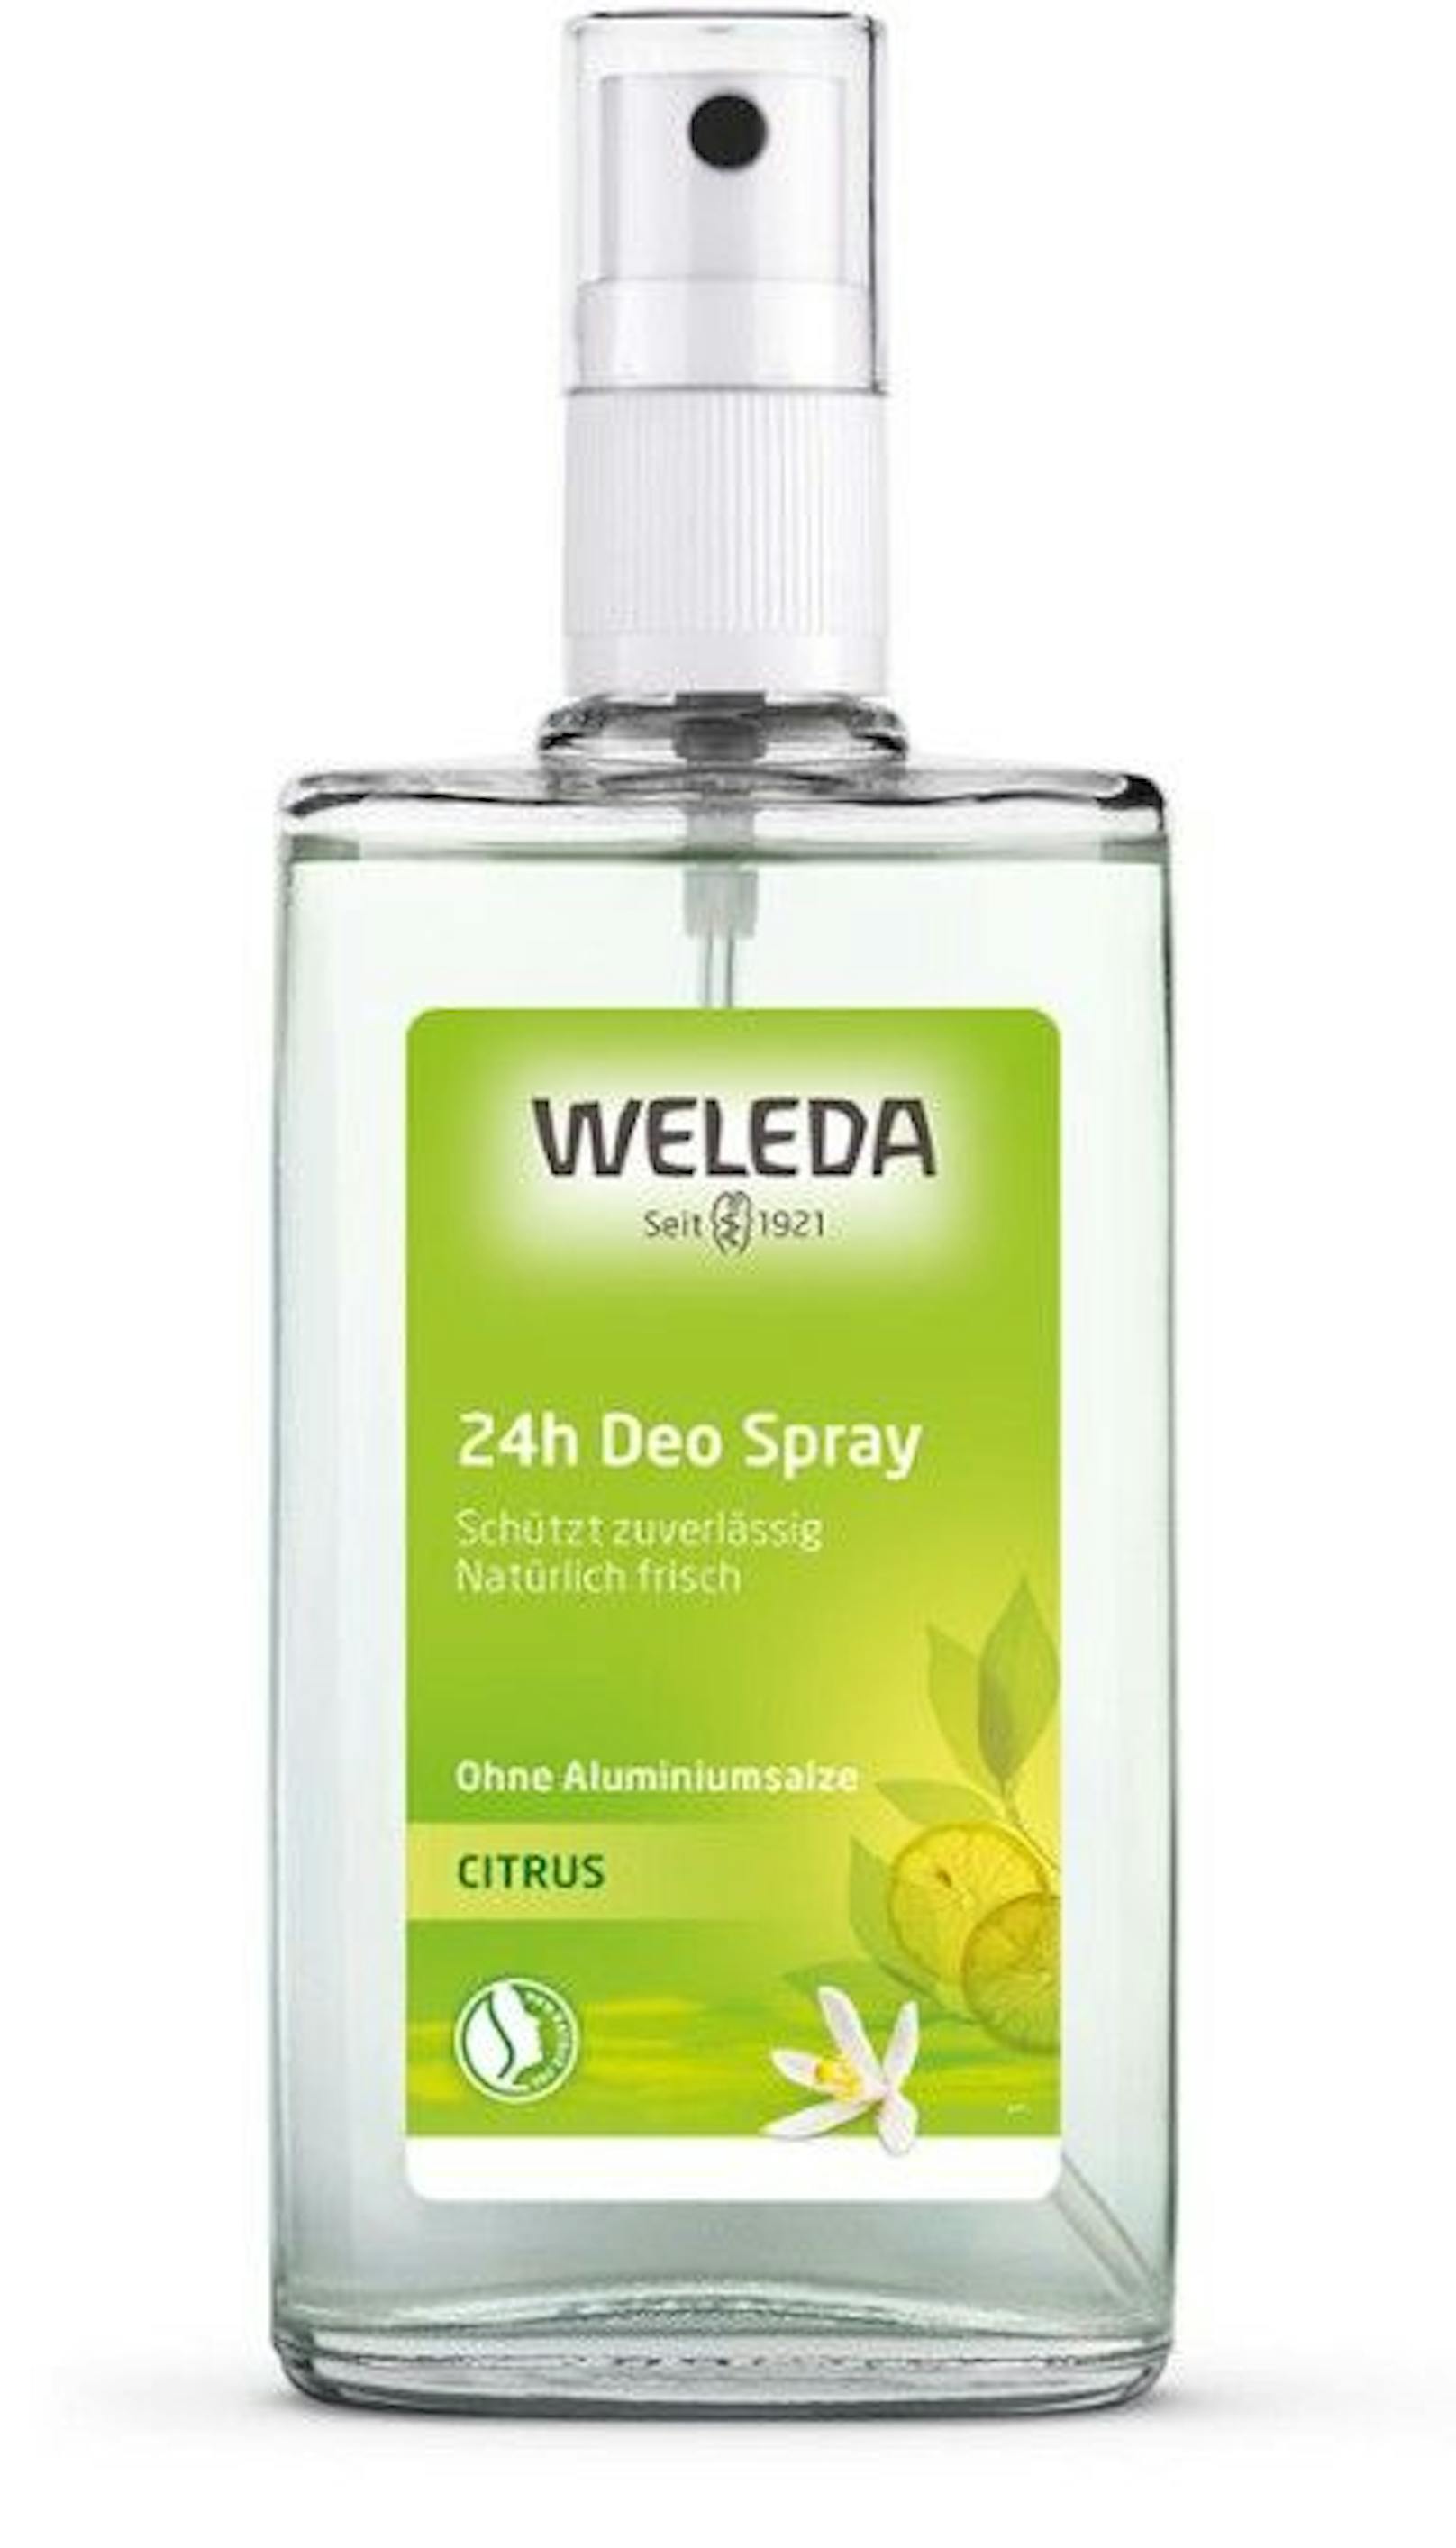 Auch das Naturkosmetikum Citrus 24h Deo Spray von Weleda erreichte nur 10 Punkte - ebenso "nicht zufriedenstellend".